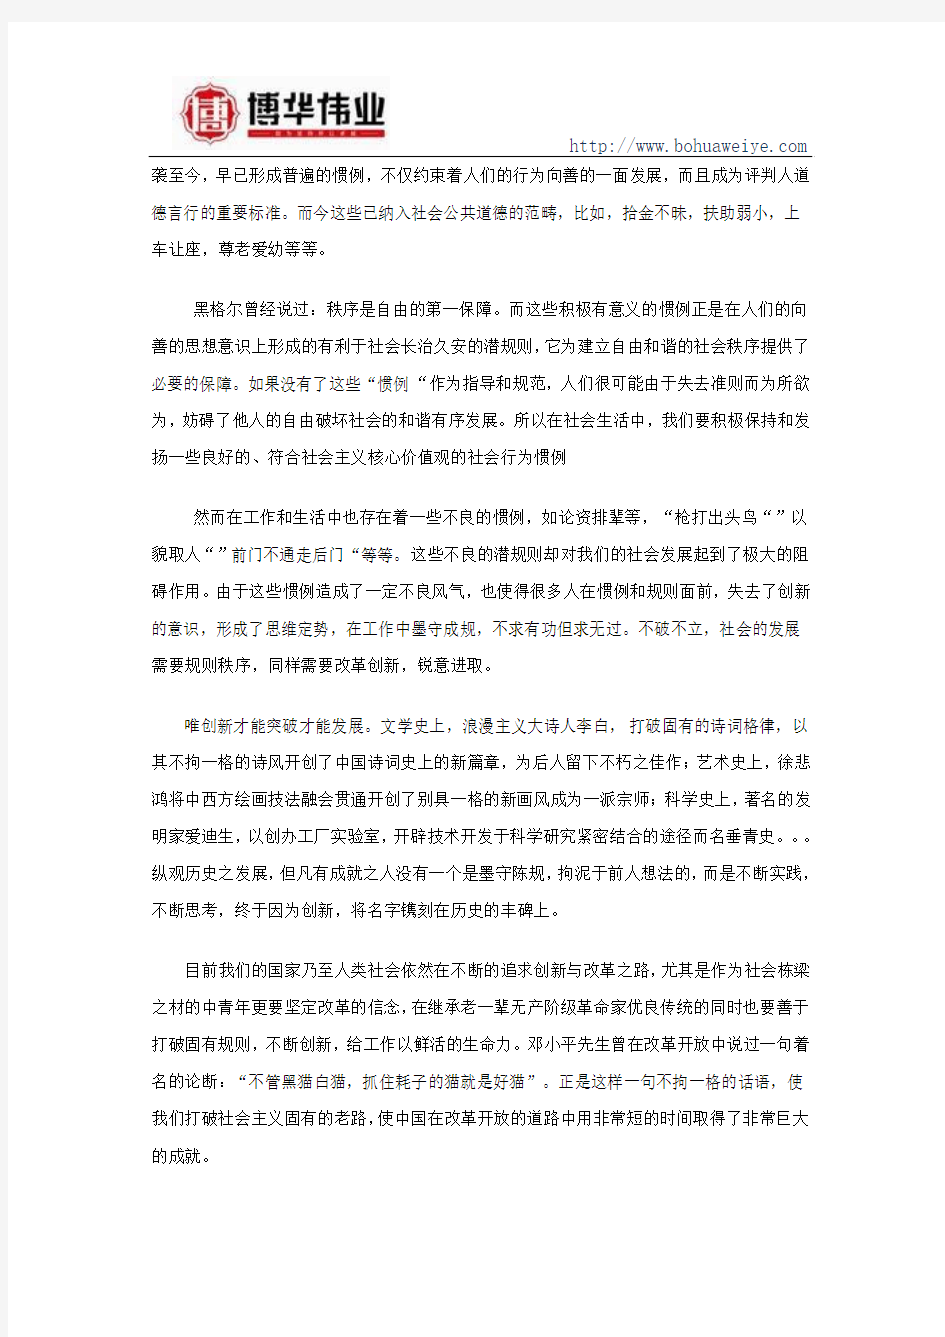 2014年(6月22日)辽宁省公务员面试真题及答案